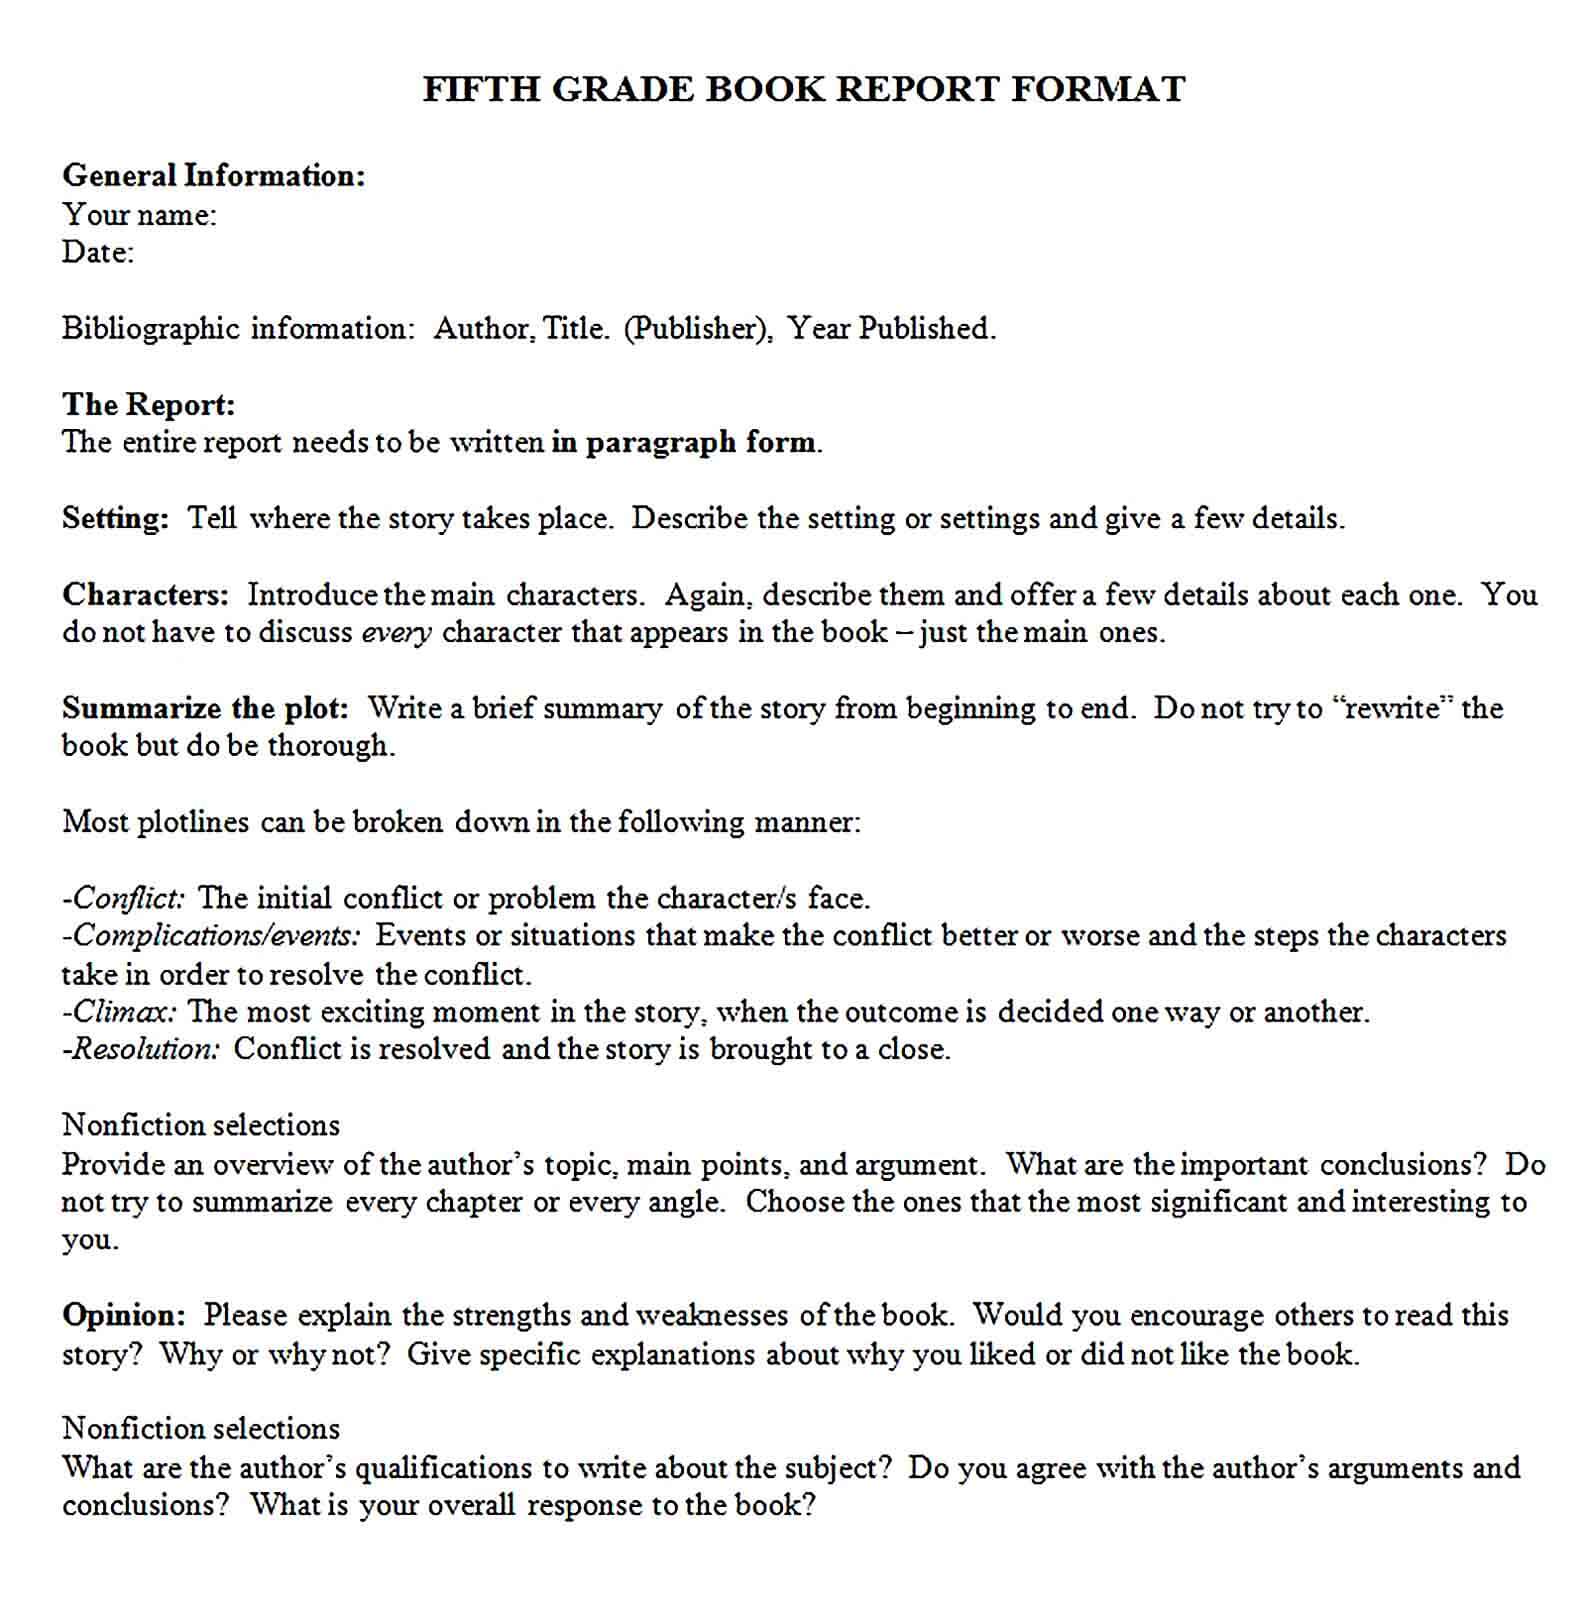 Sample 5th Grade Book Report Format